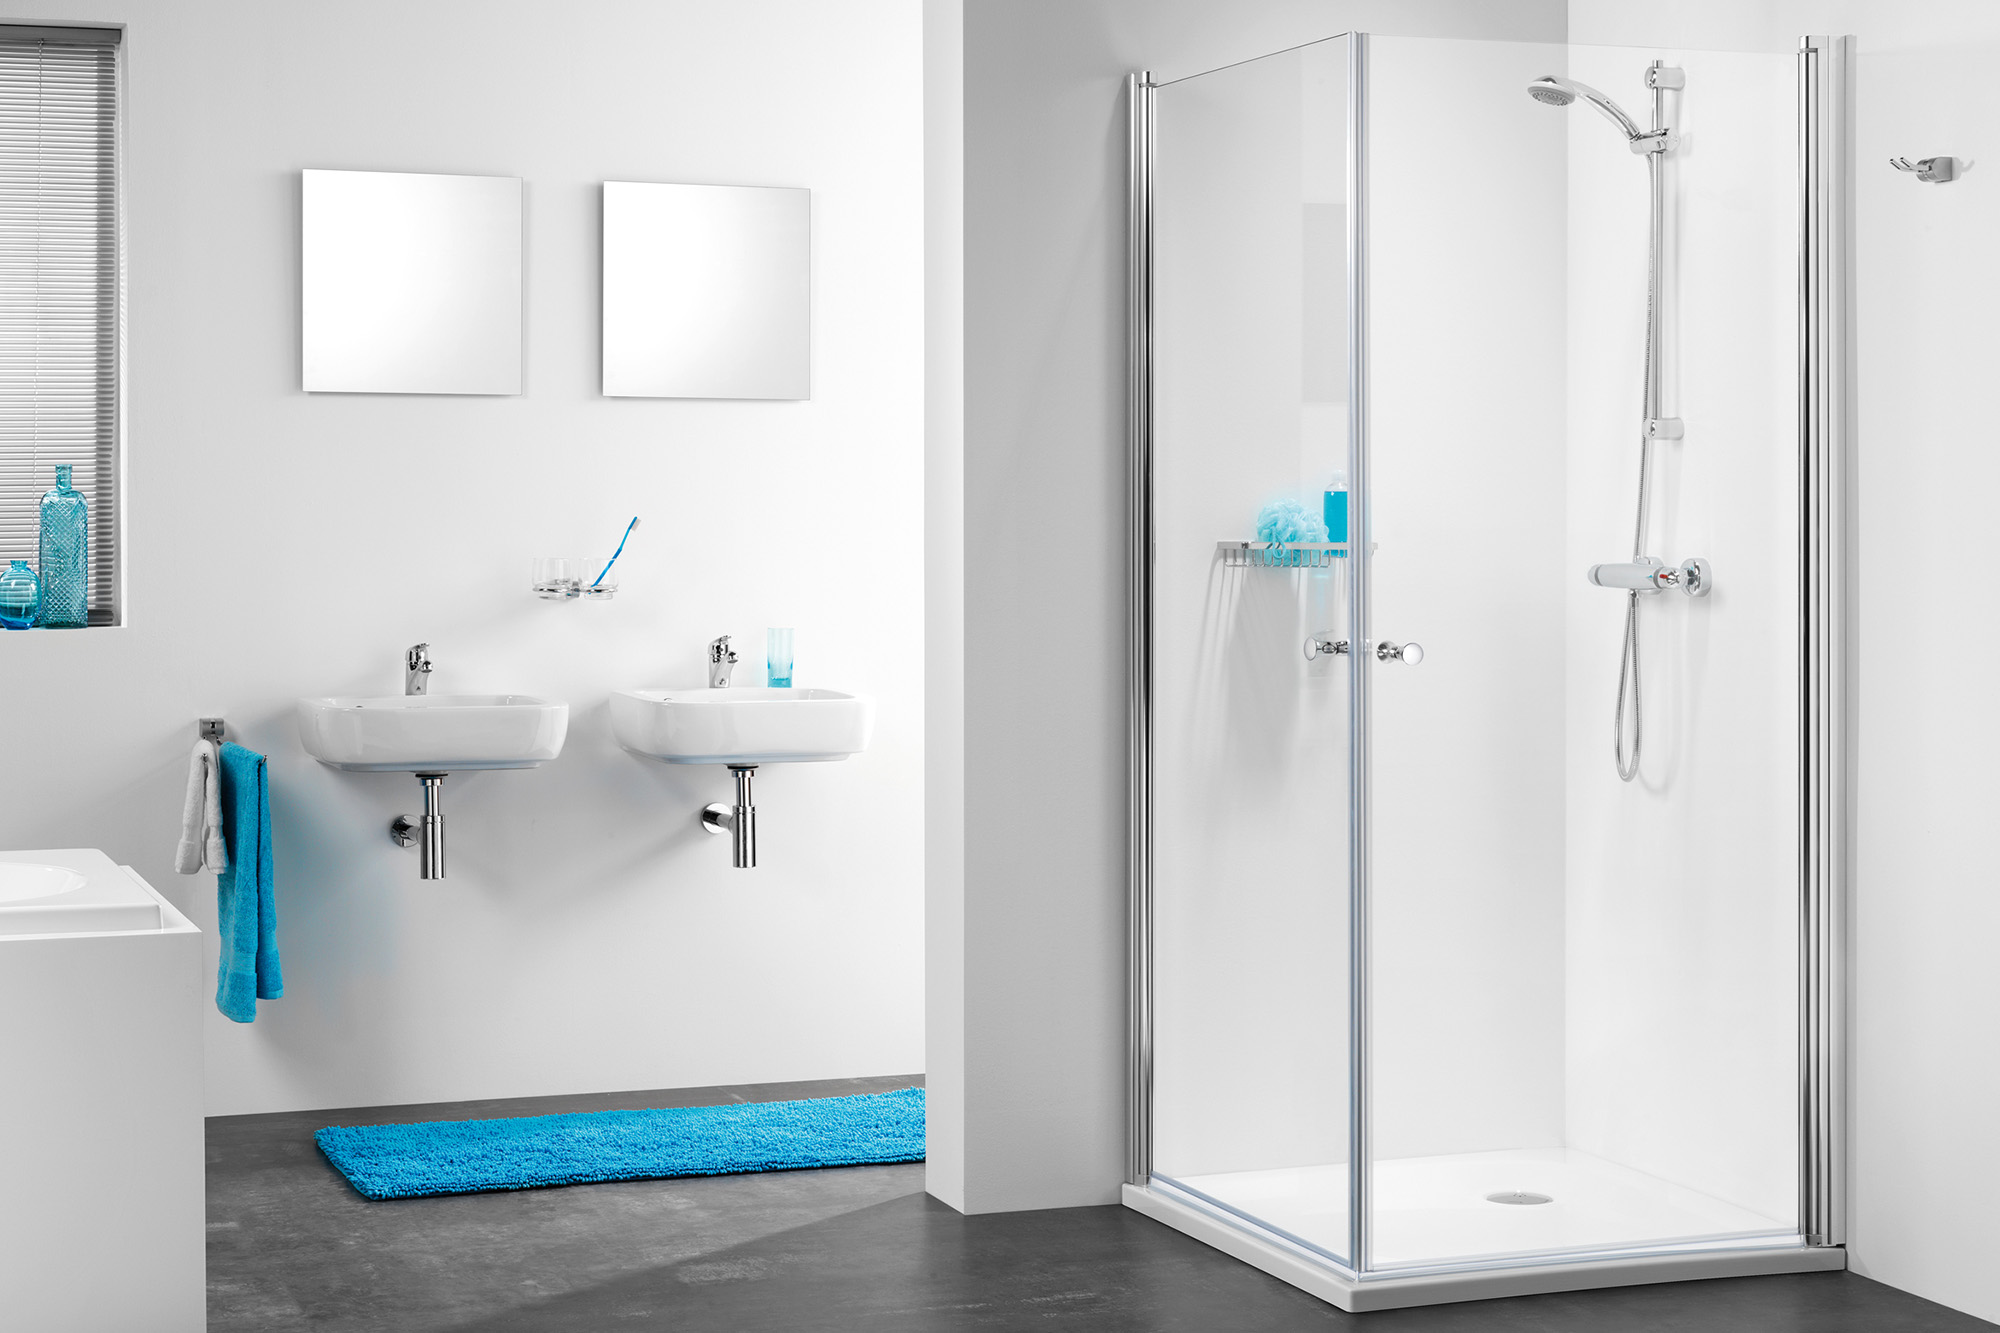 Ongekend Altijd een schone douche met deze tips - Blog - Sanidirect ZT-66